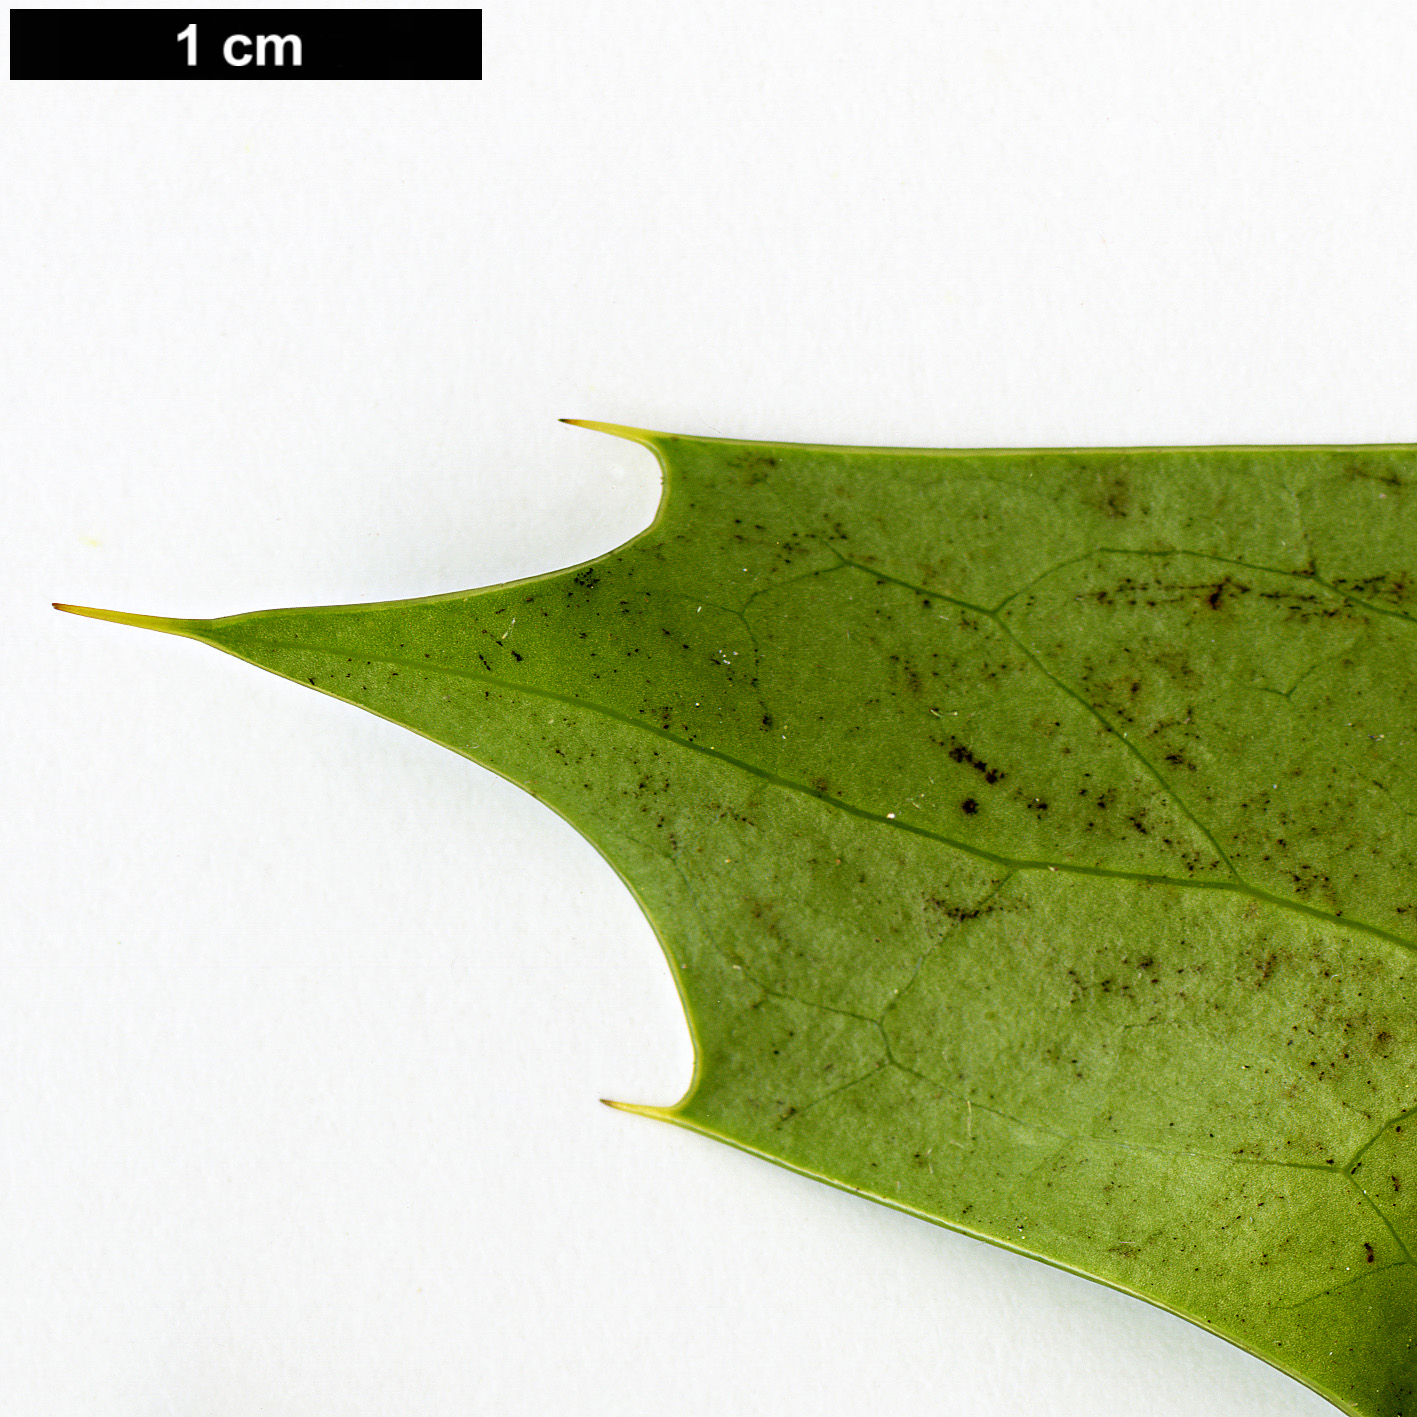 High resolution image: Family: Berberidaceae - Genus: Mahonia - Taxon: napaulensis - SpeciesSub: 'Maharajah'